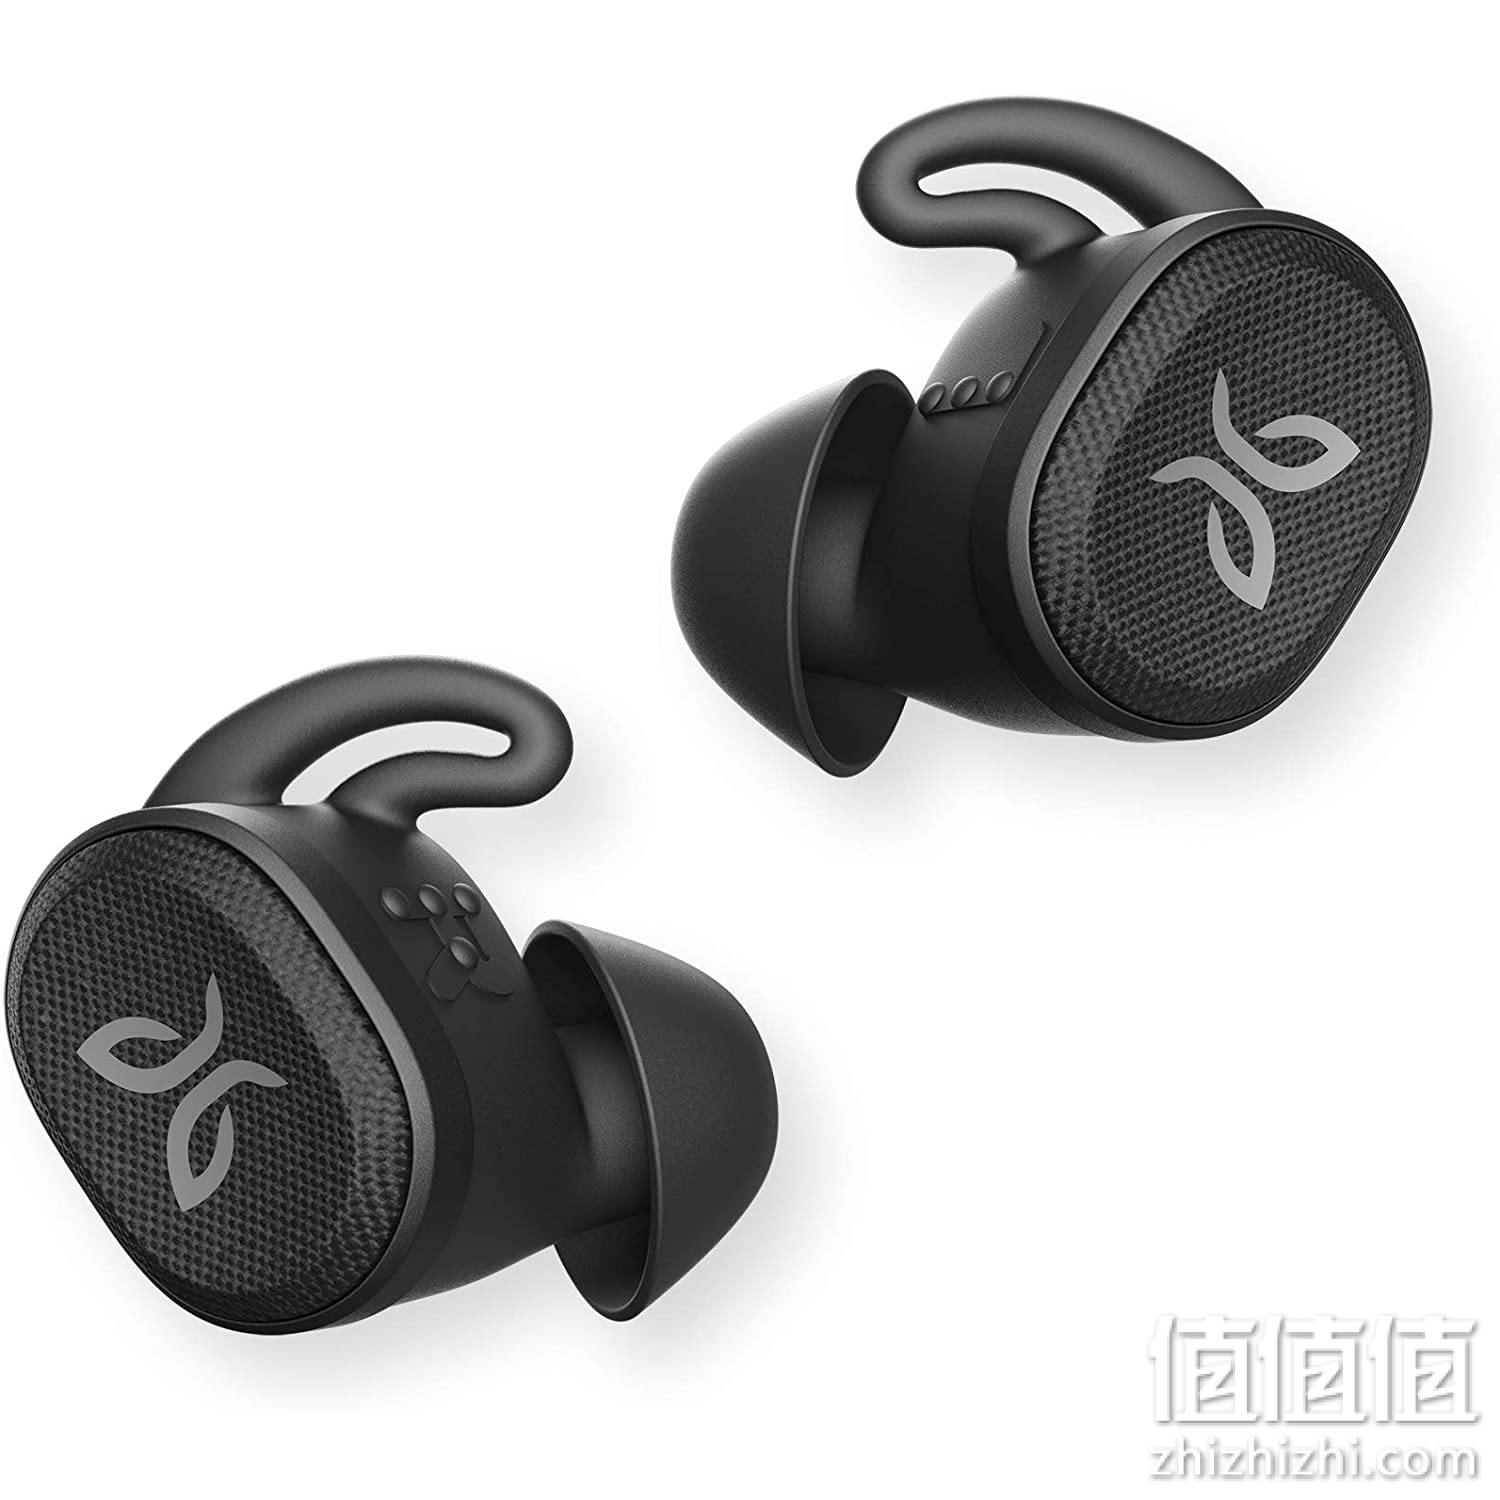 Jaybird Vista 2 True 无线运动蓝牙耳机带充电盒 - ANC 运动贴合,24 小时电池,防水耳塞,*级耐用性,高品质通话 - 黑色